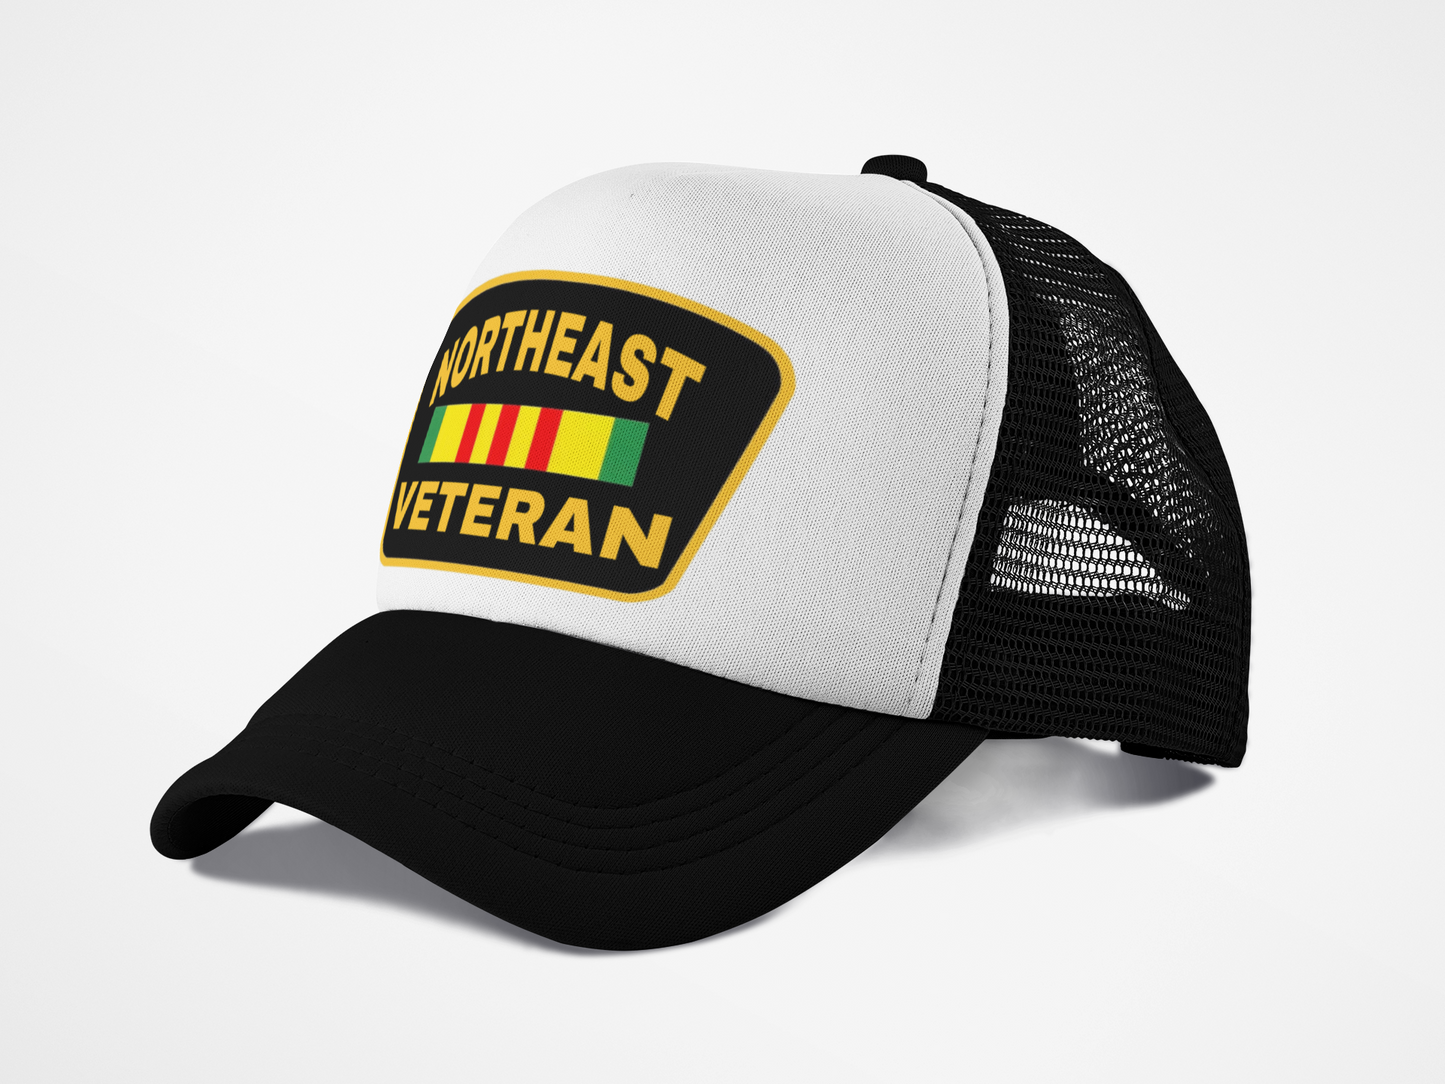 Northeast Veteran - Trucker Hat